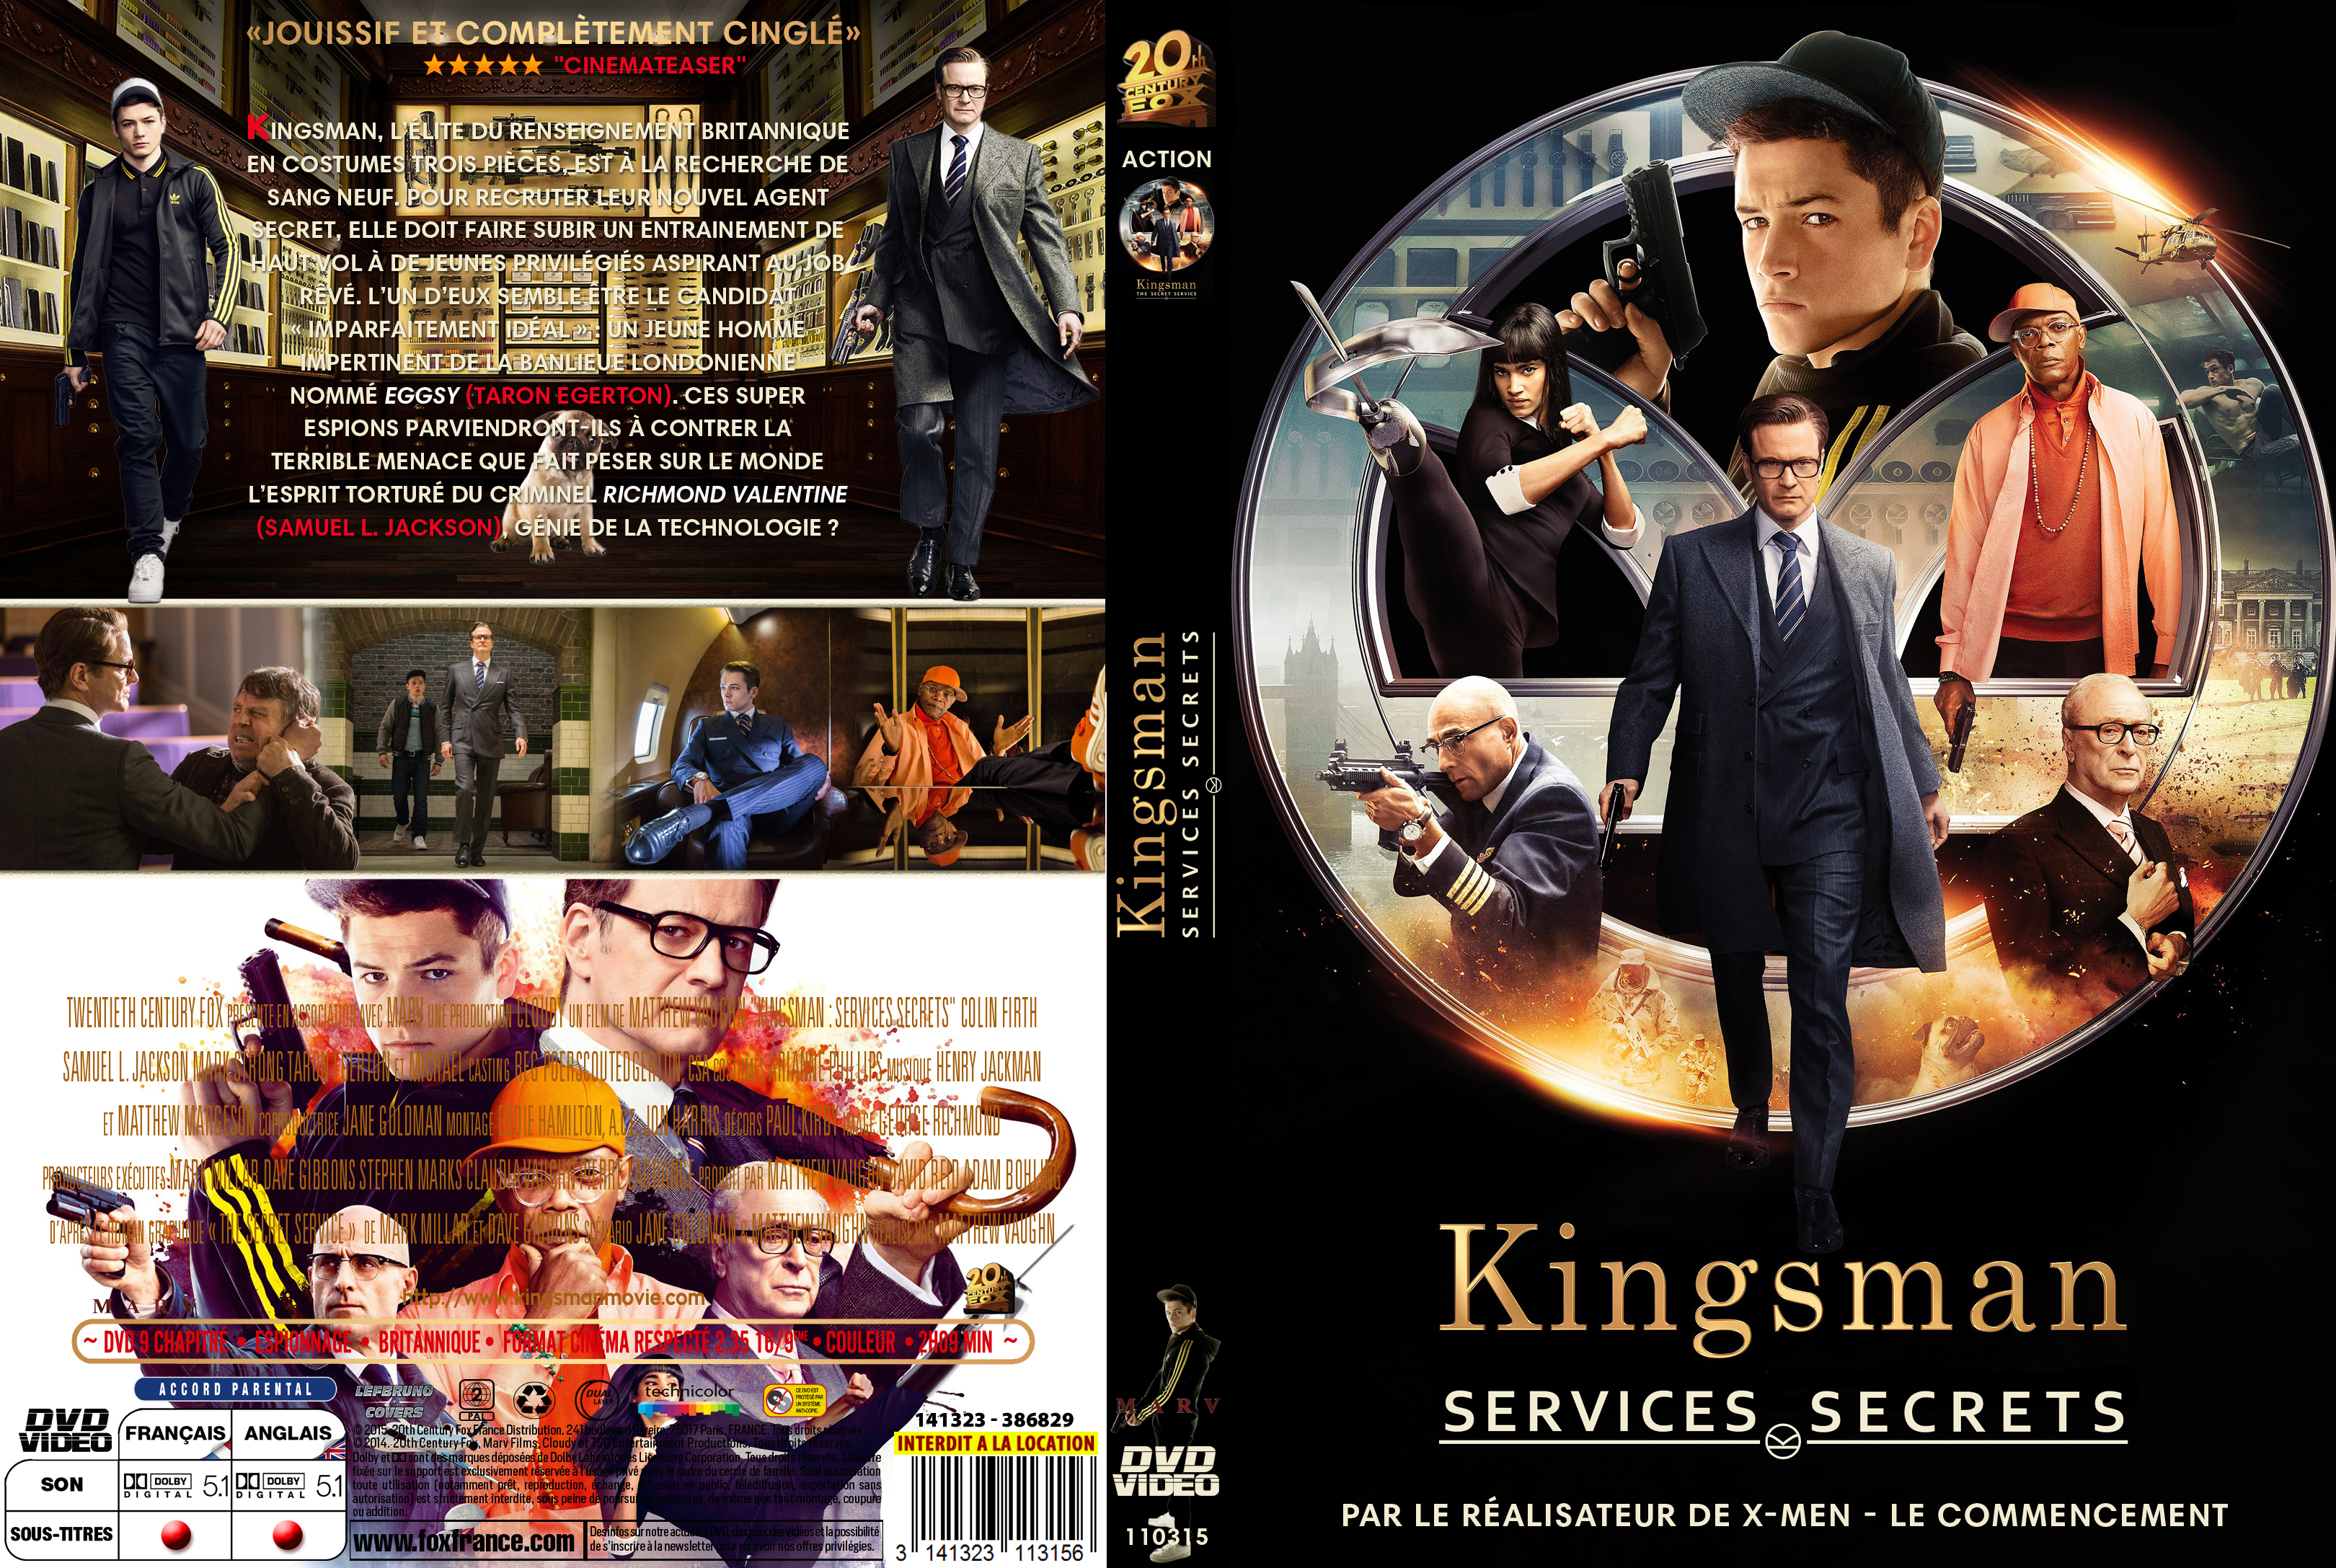 Jaquette DVD Kingsman Services Secrets custom